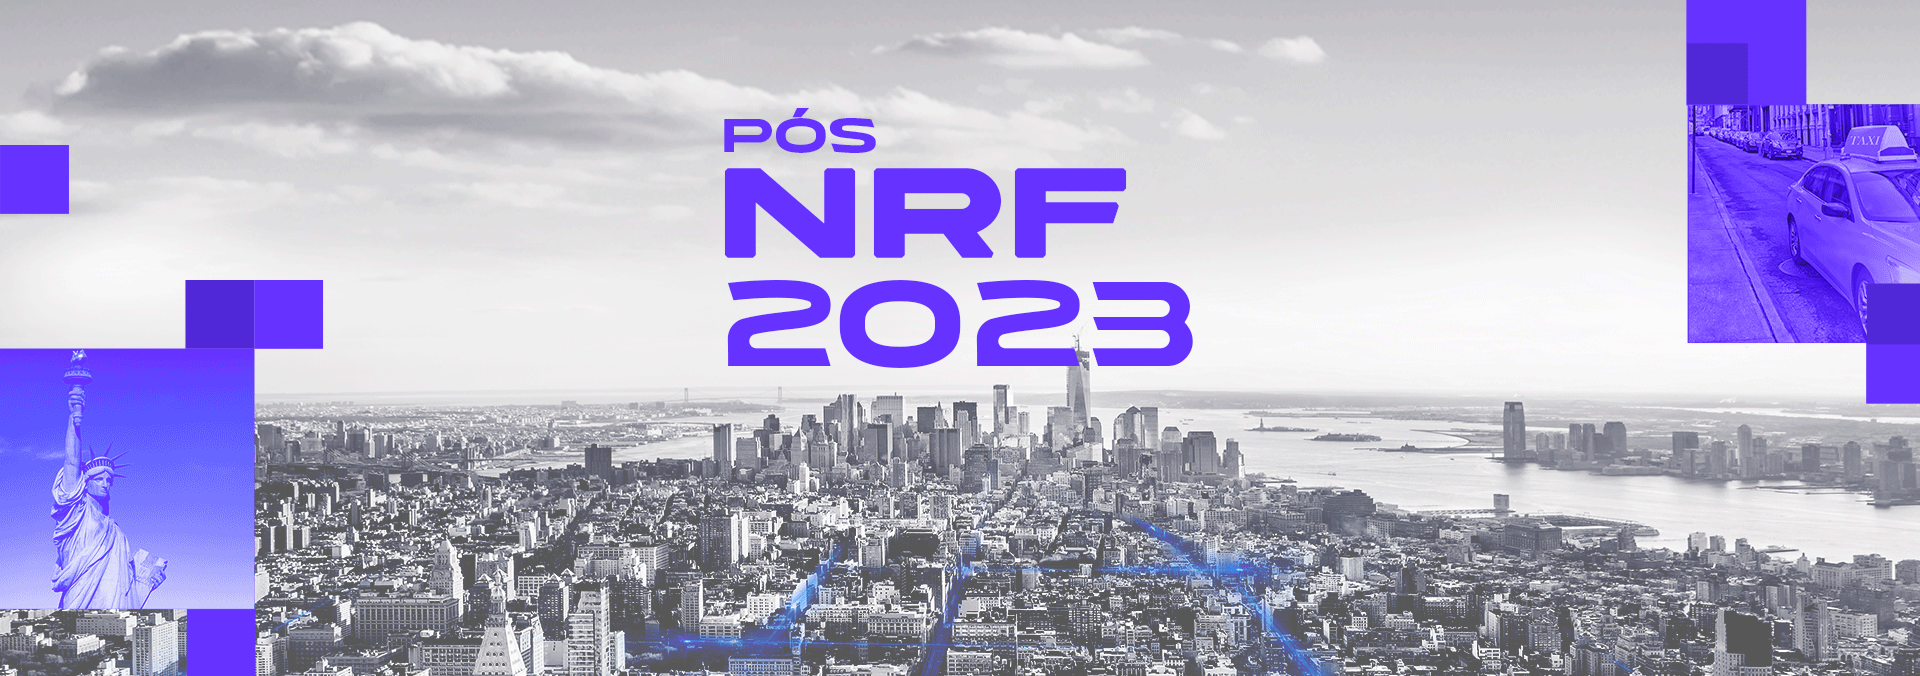 PÓS NRF 2023